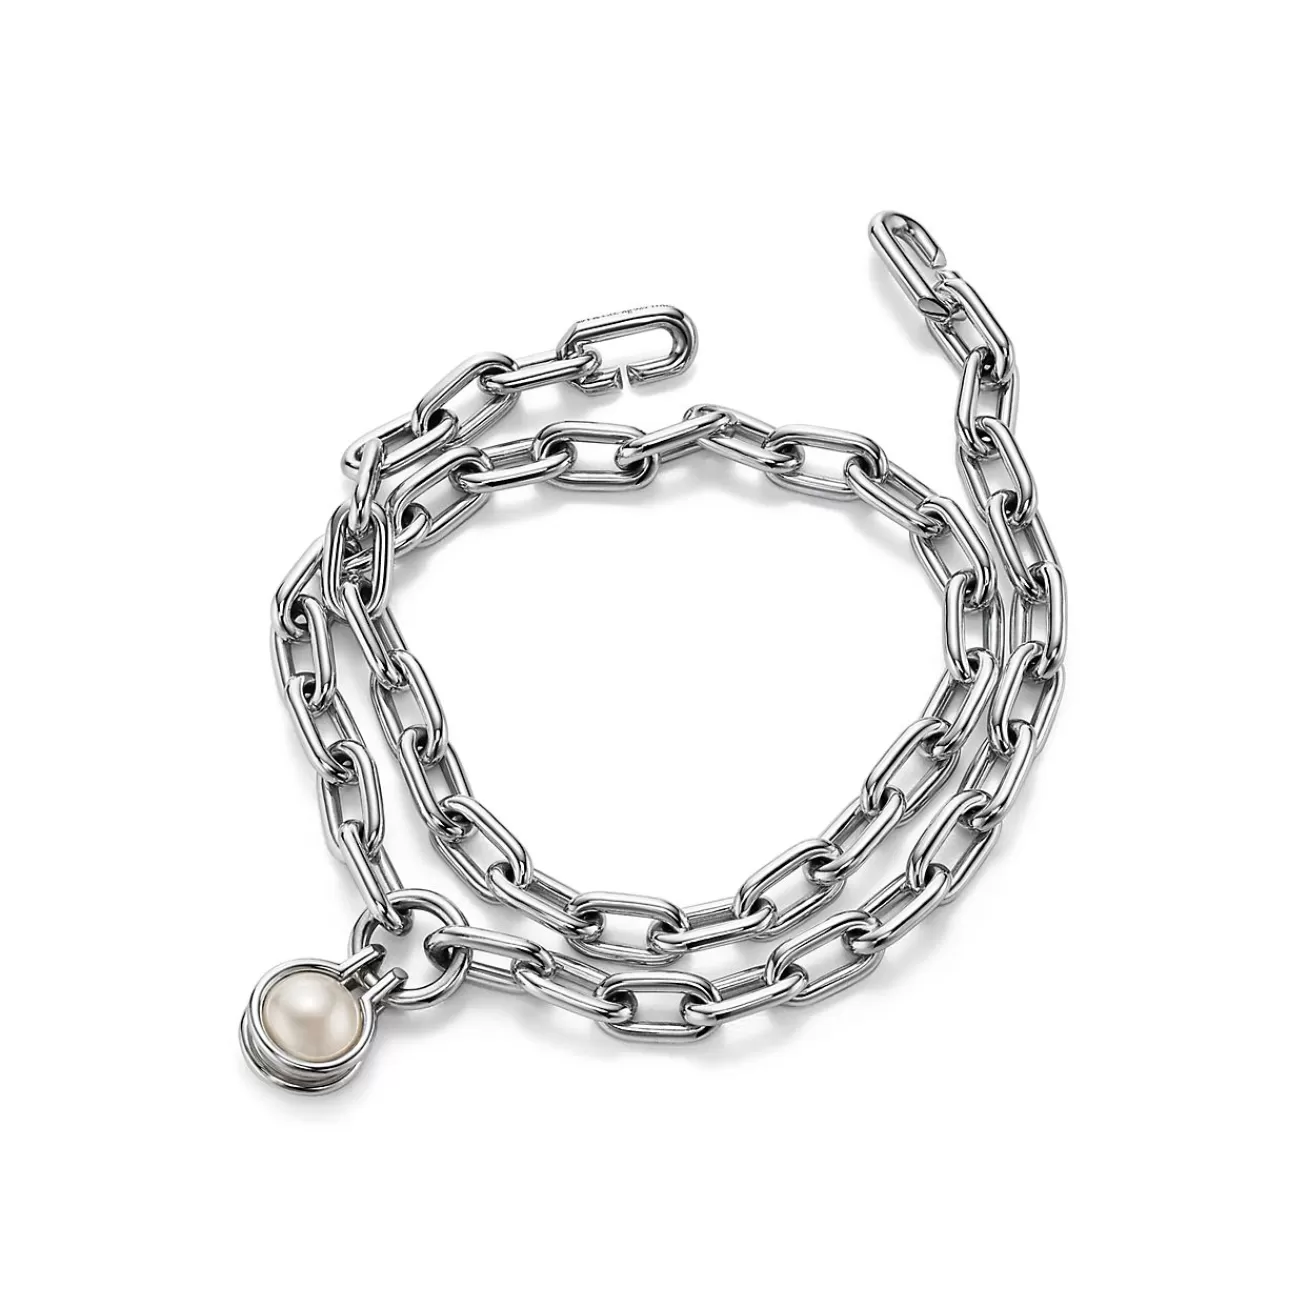 Tiffany & Co. Tiffany HardWear freshwater pearl bracelet in sterling silver, medium. | ^ Bracelets | Gifts for Her